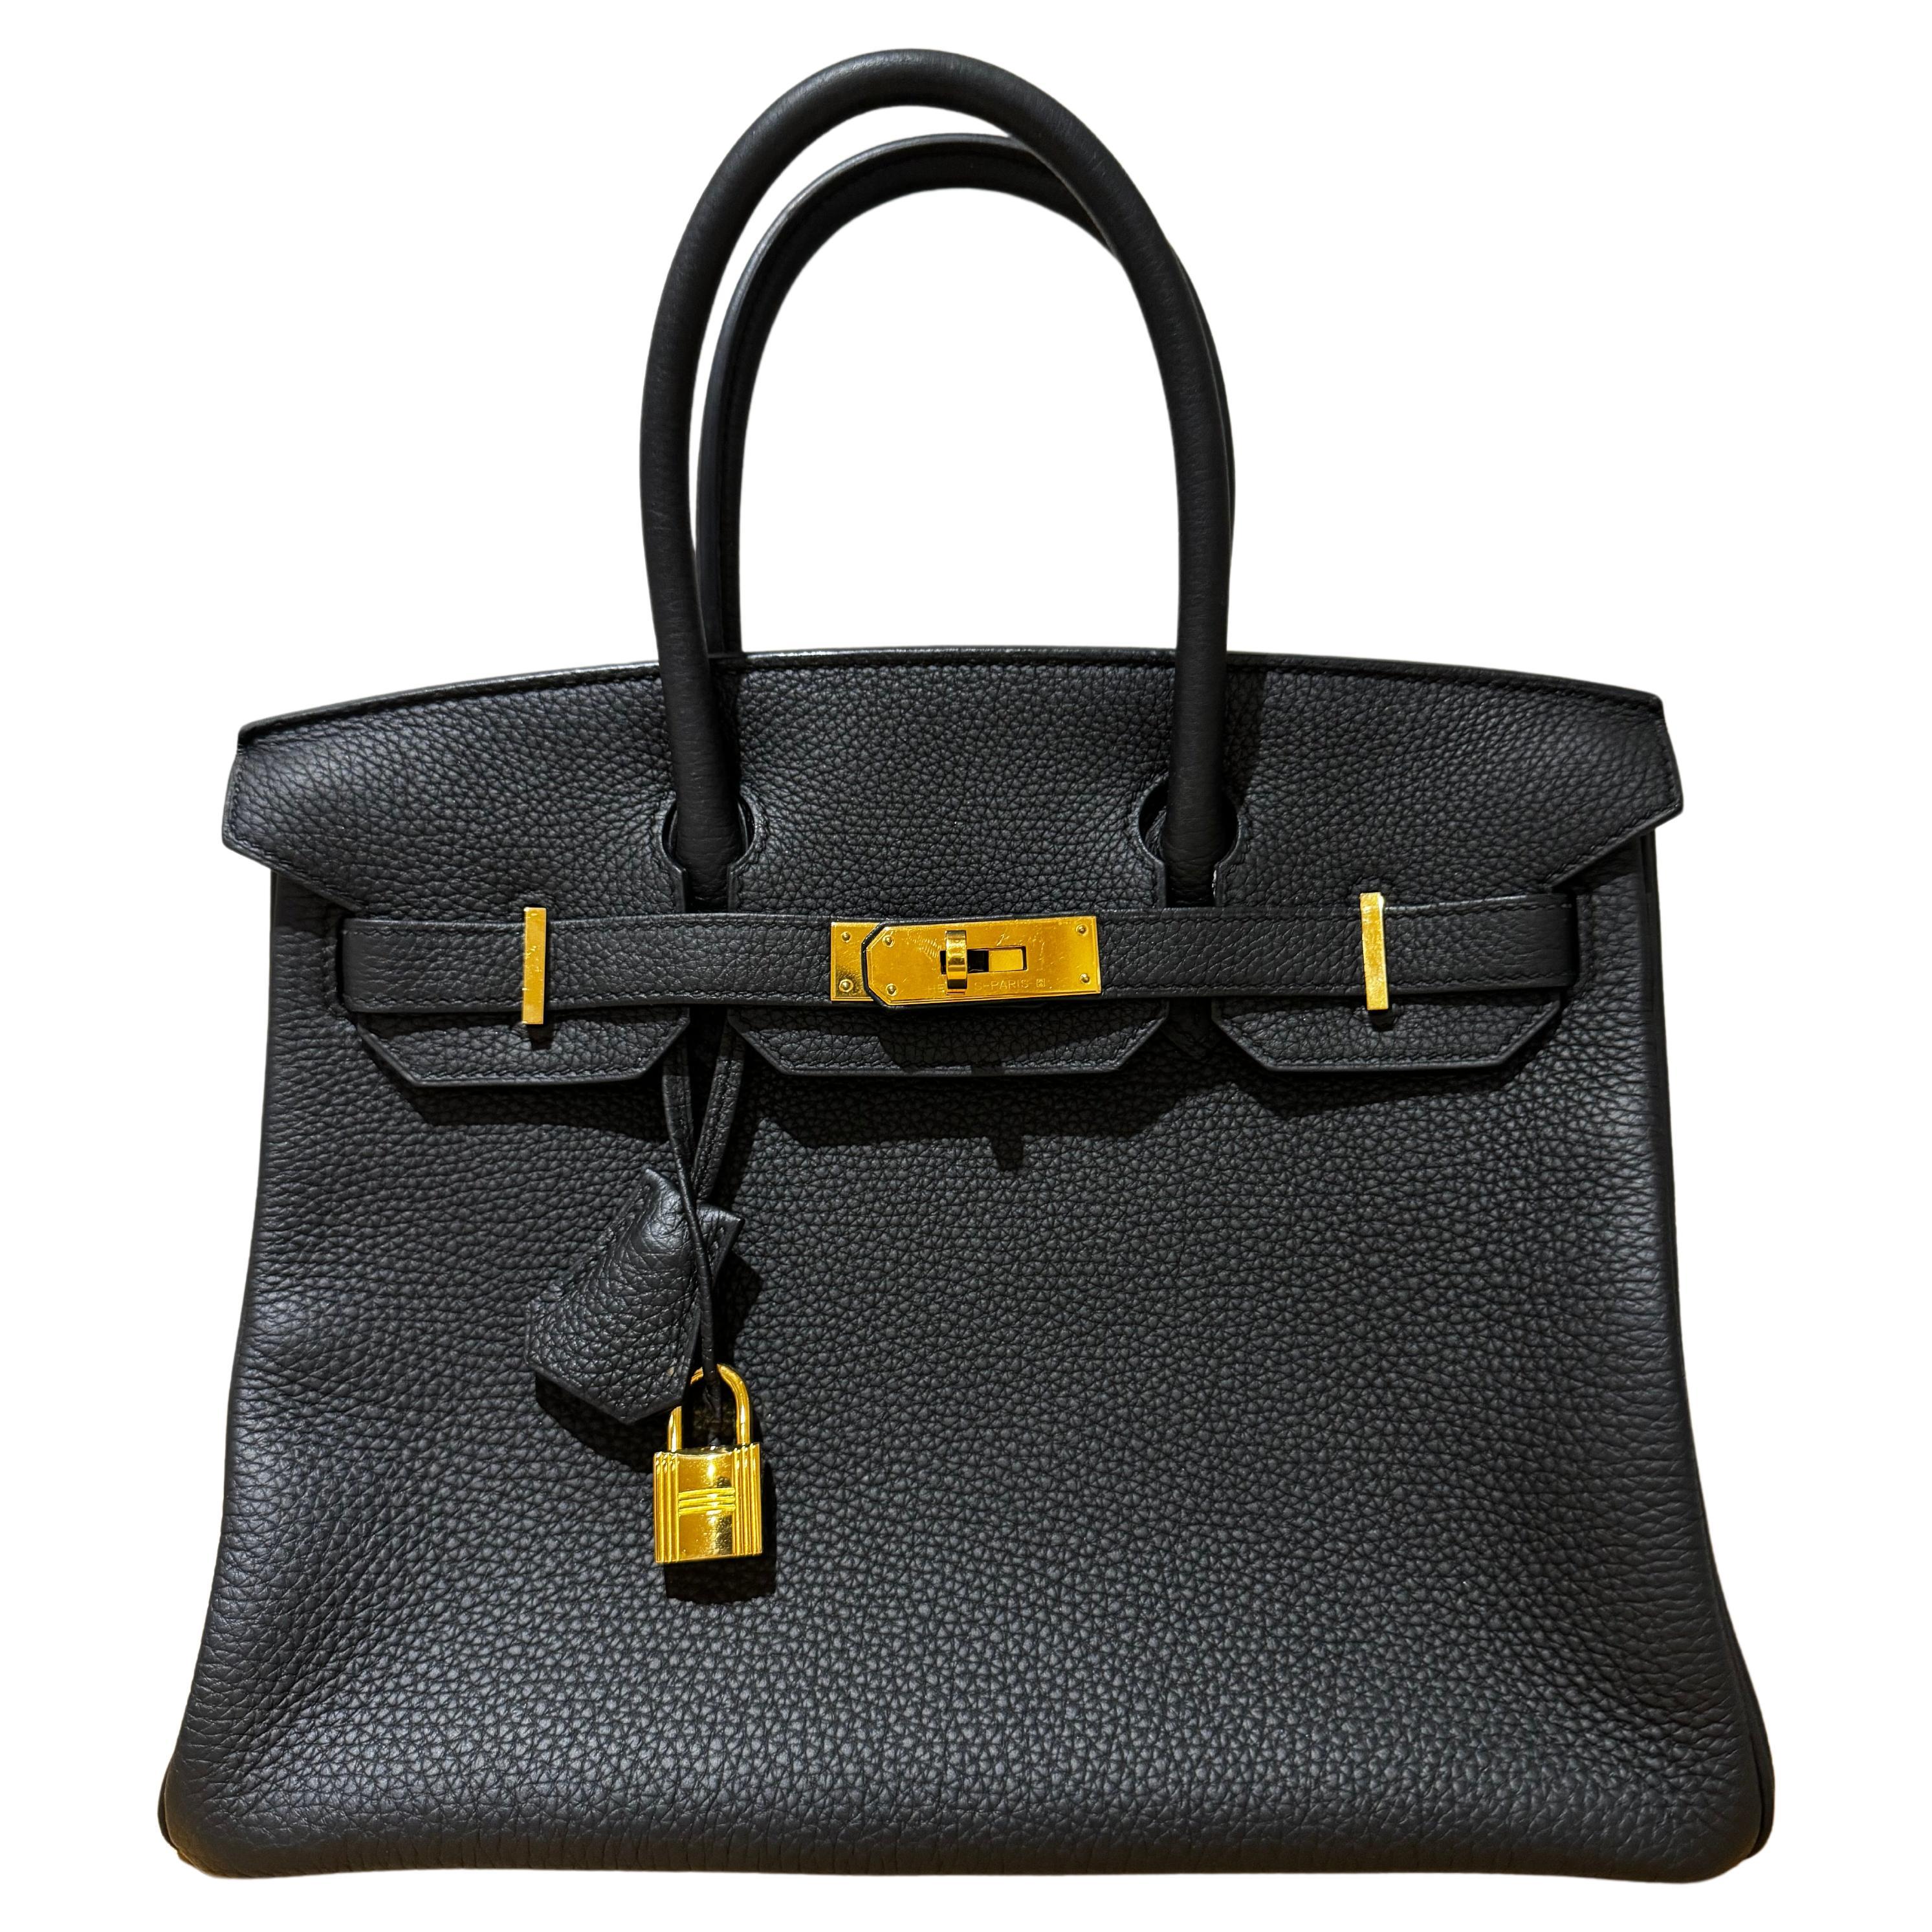 Hermes birkin 30 black togo gold hardware bag  For Sale